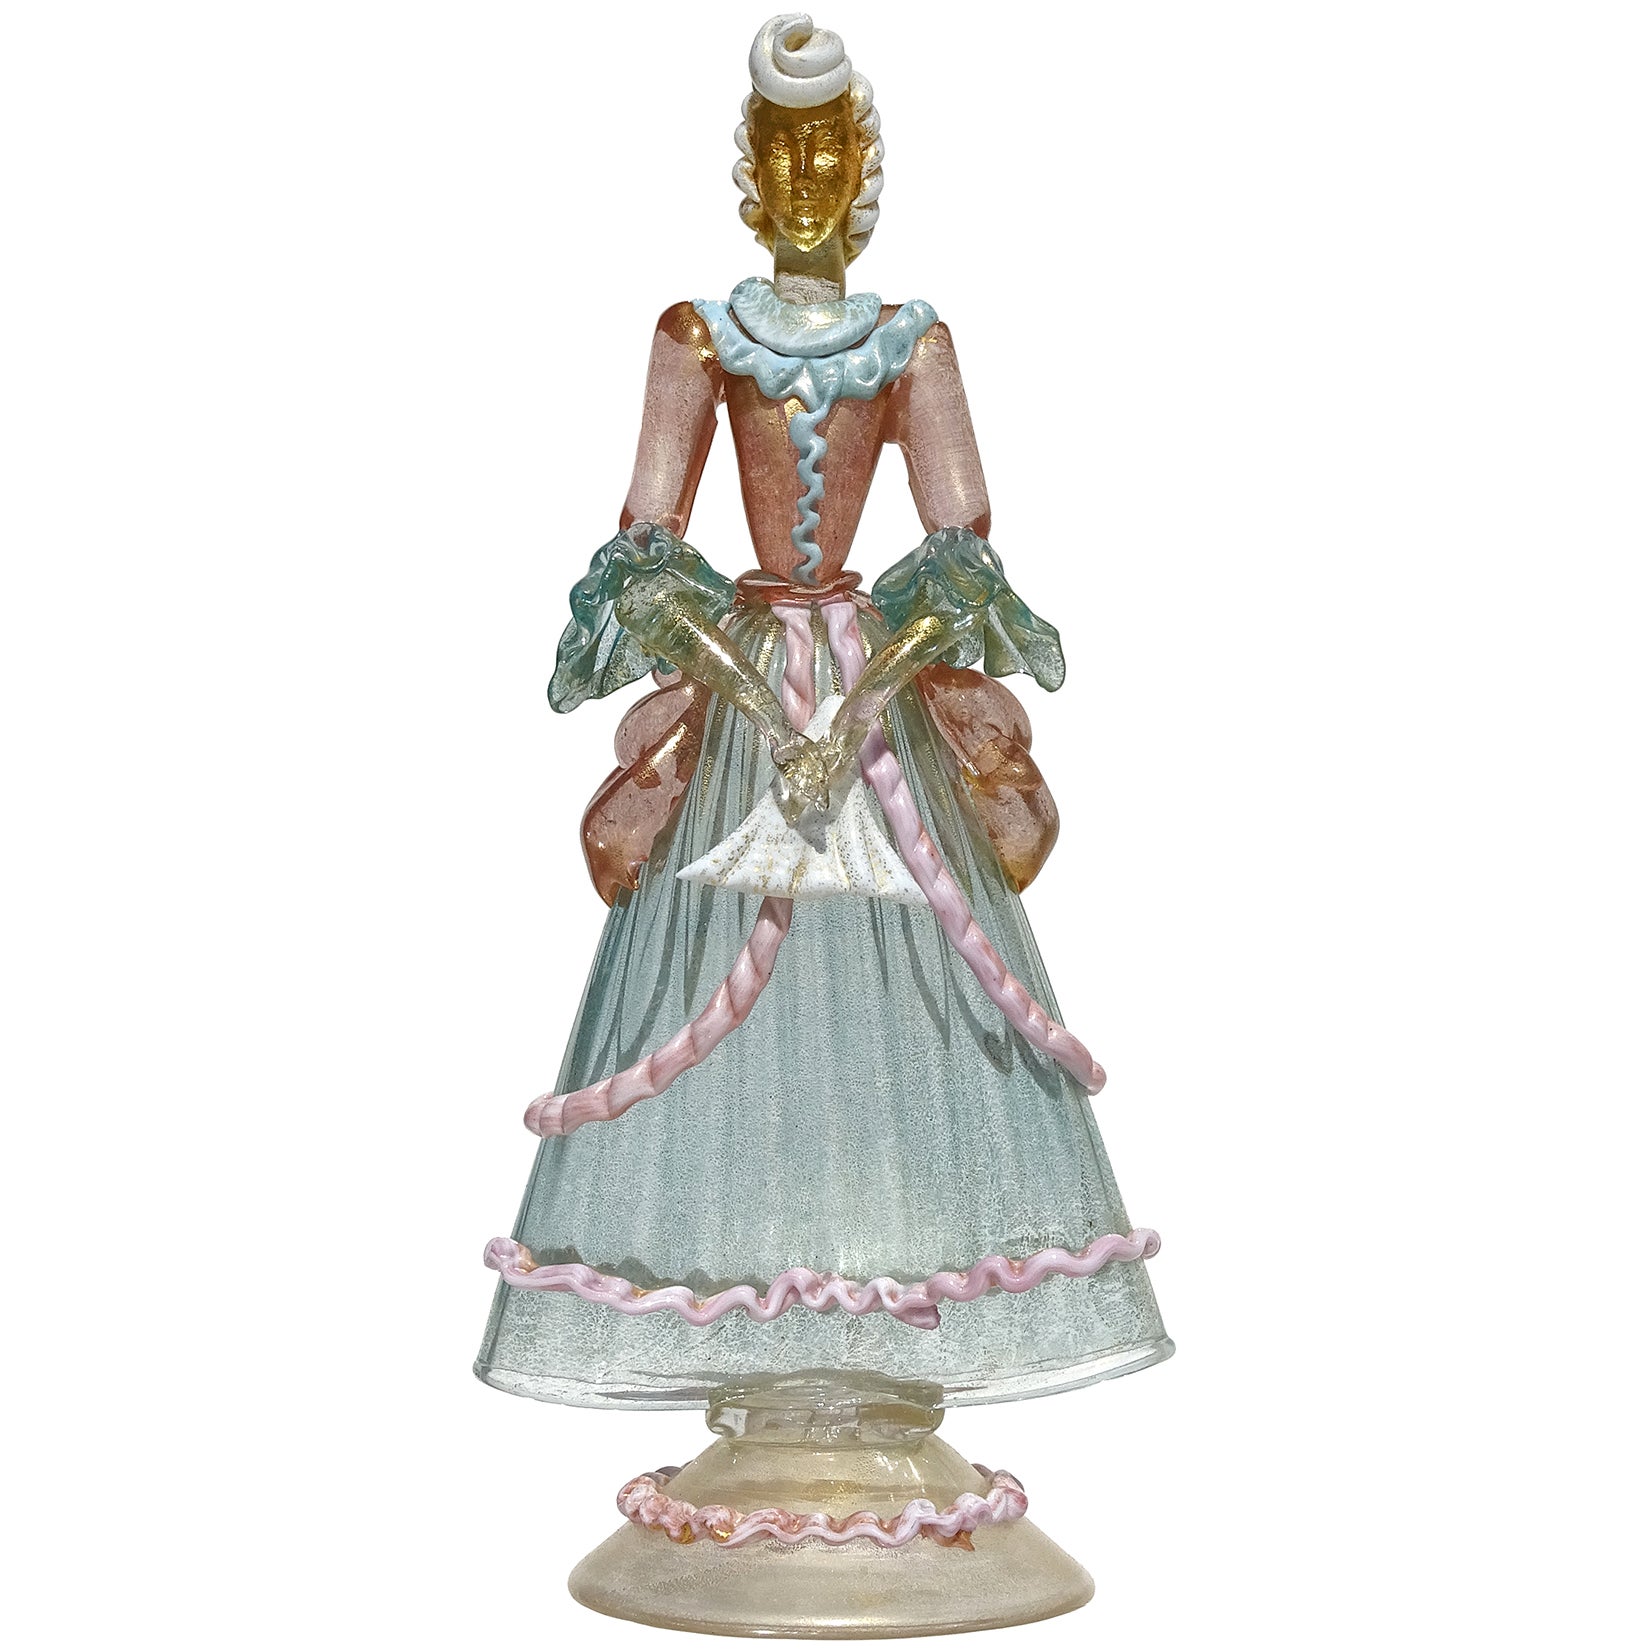 Skulptur eines viktorianischen Kleides aus italienischem Muranoglas in Rosa und Blau mit Goldflecken